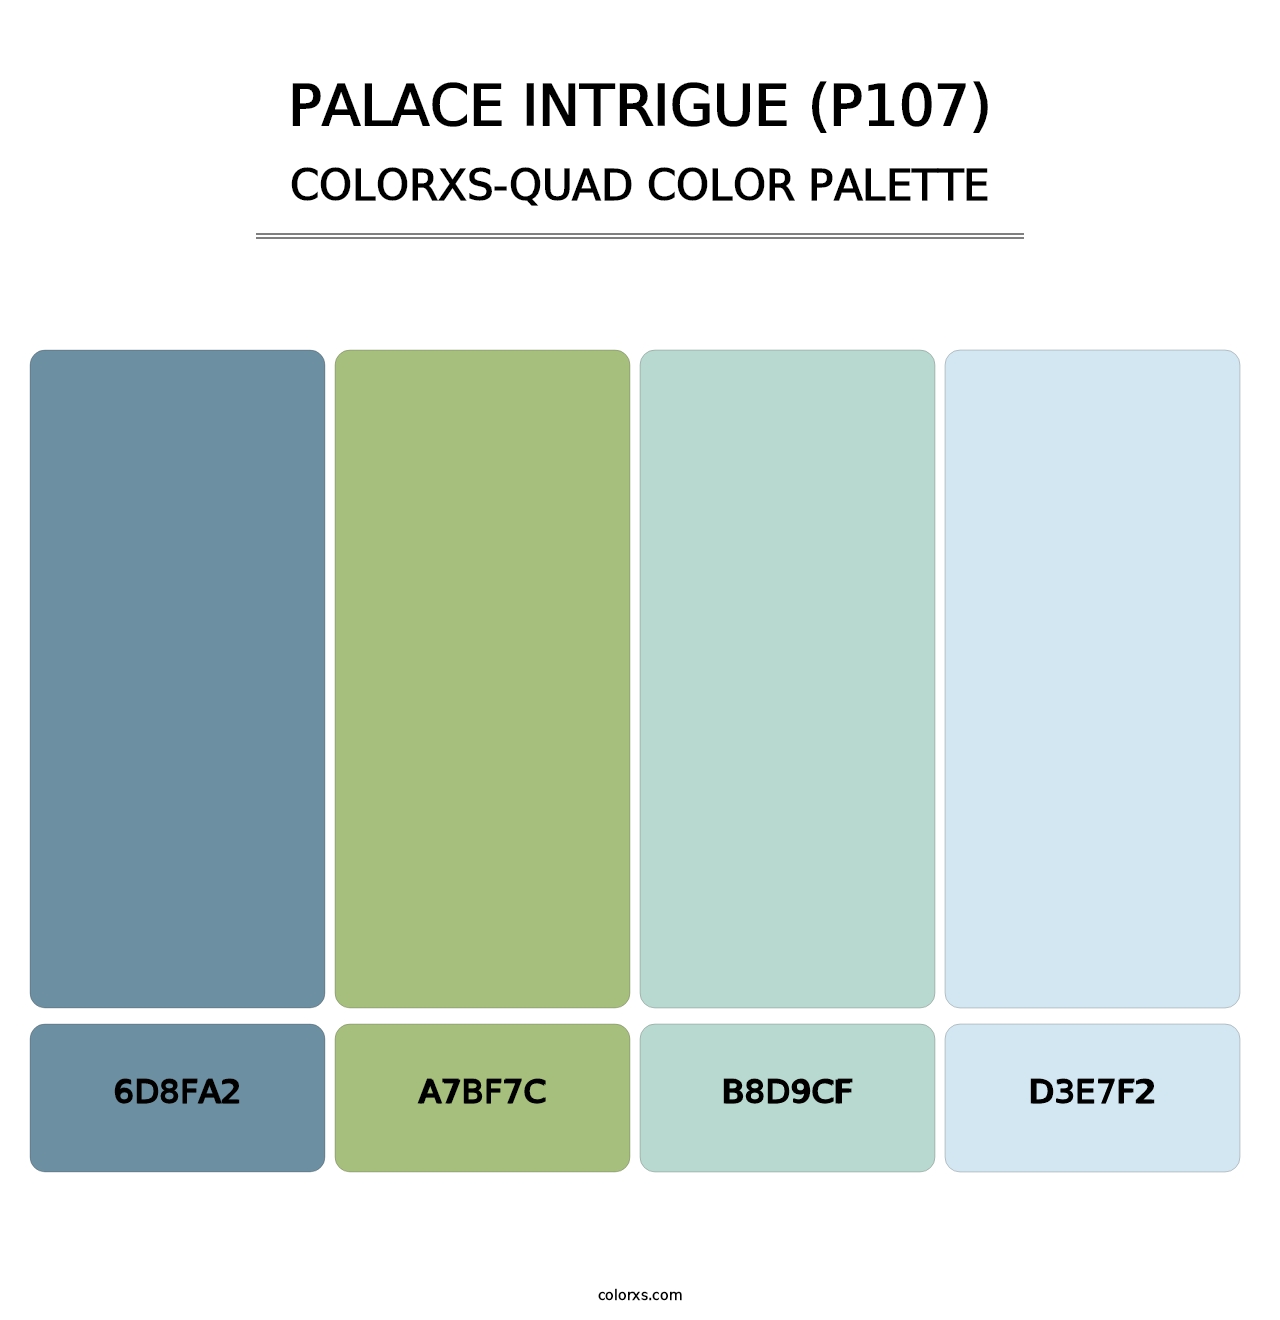 Palace Intrigue (P107) - Colorxs Quad Palette